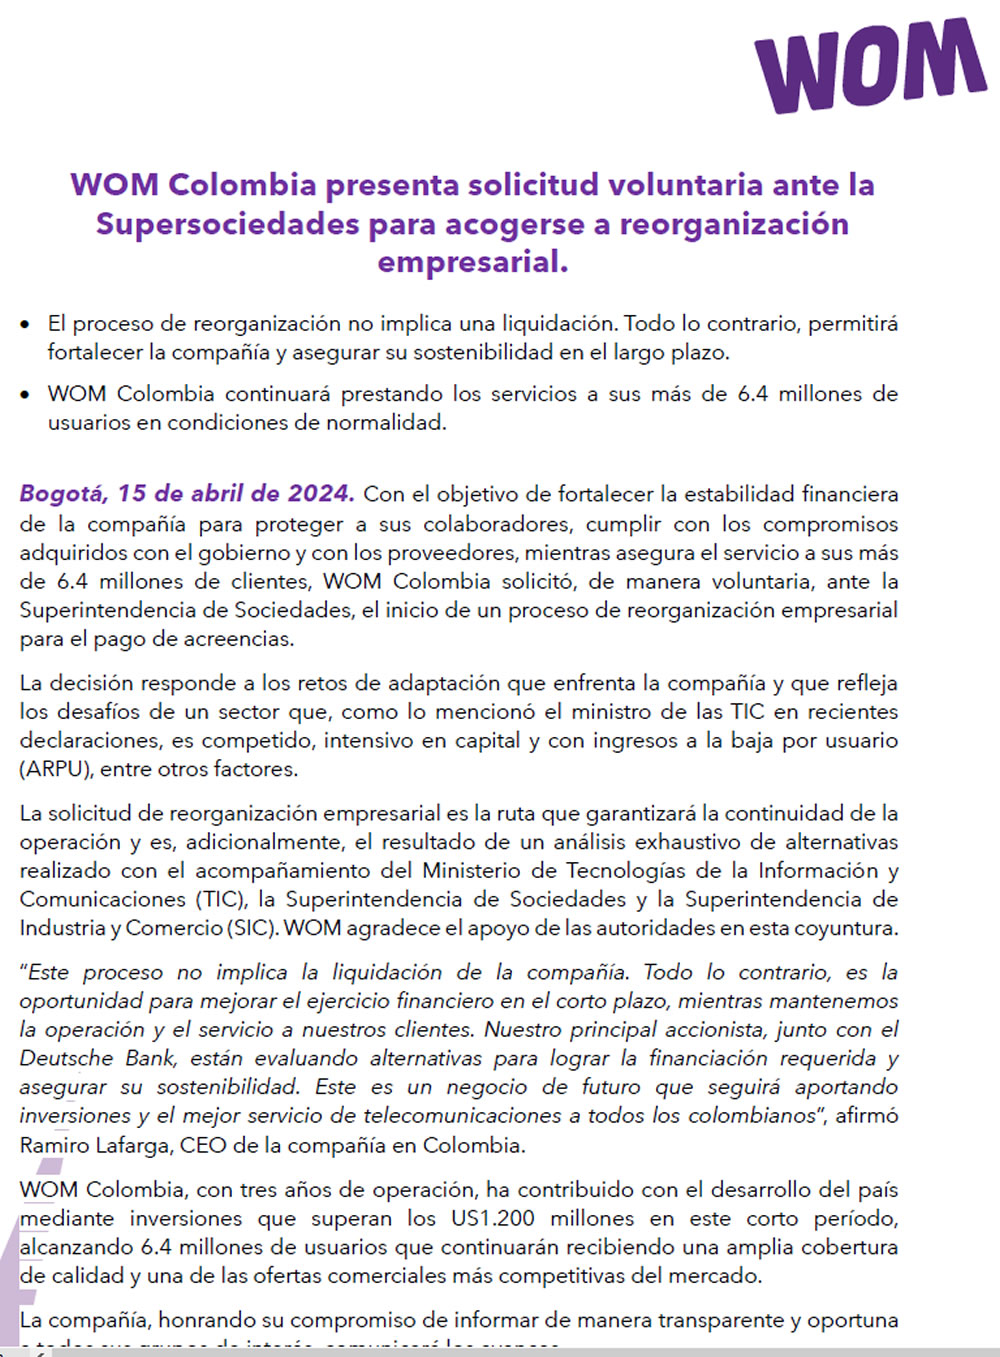 WOM Colombia presenta solicitud ante Supersociedades para reorganizarse